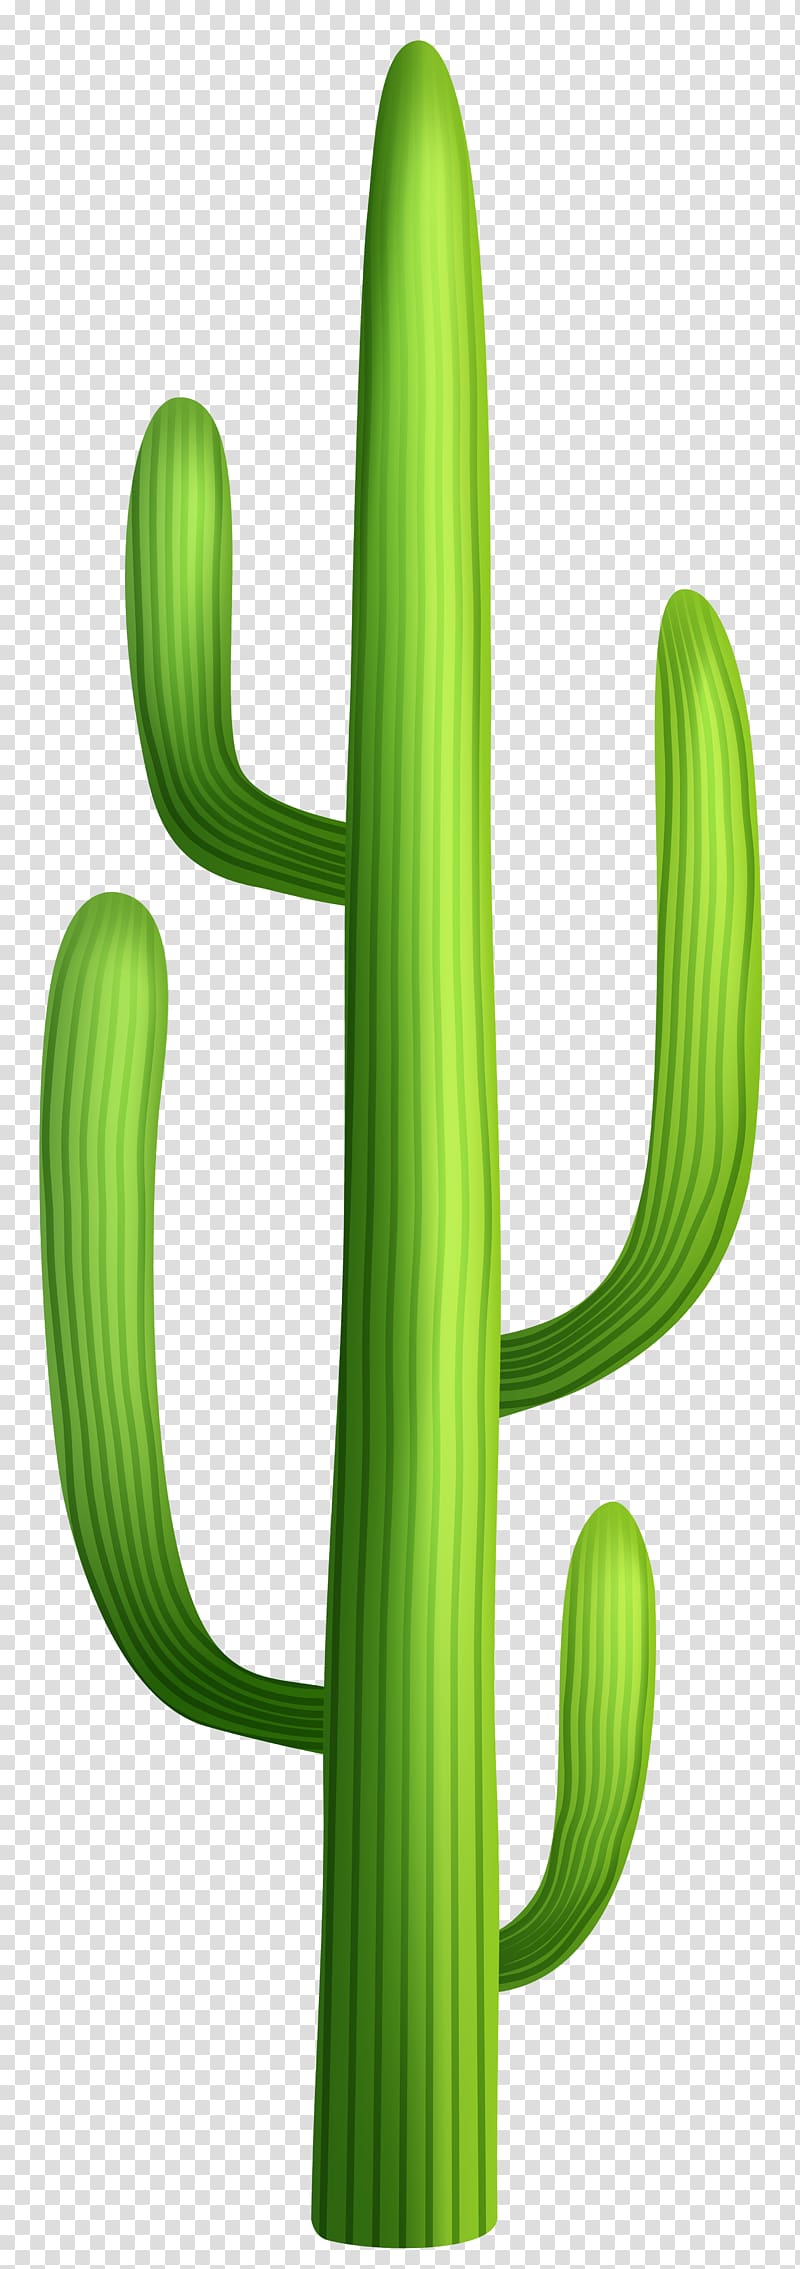 Cactaceae Desert , cactus transparent background PNG clipart